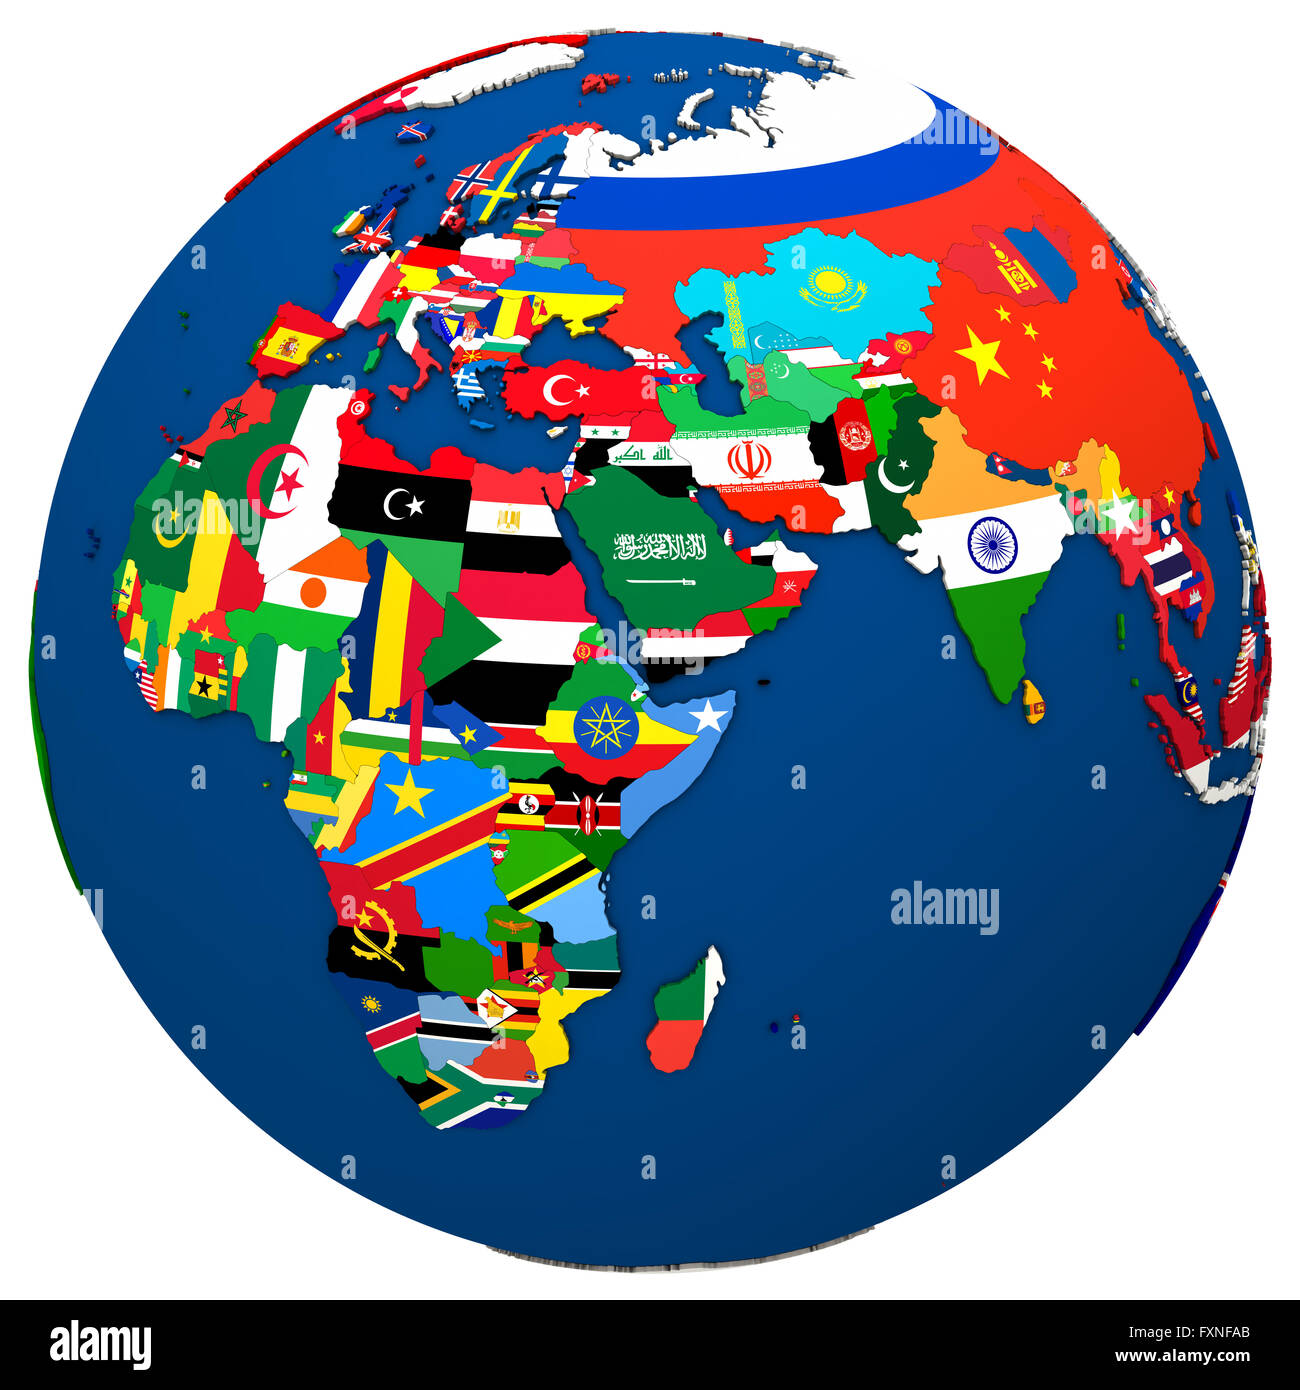 Carte Politique De Leurope Afrique Et Moyen Orient Avec Chaque Pays Represente Par Son Drapeau National 3d Illustration Isole Sur Fxnfab 